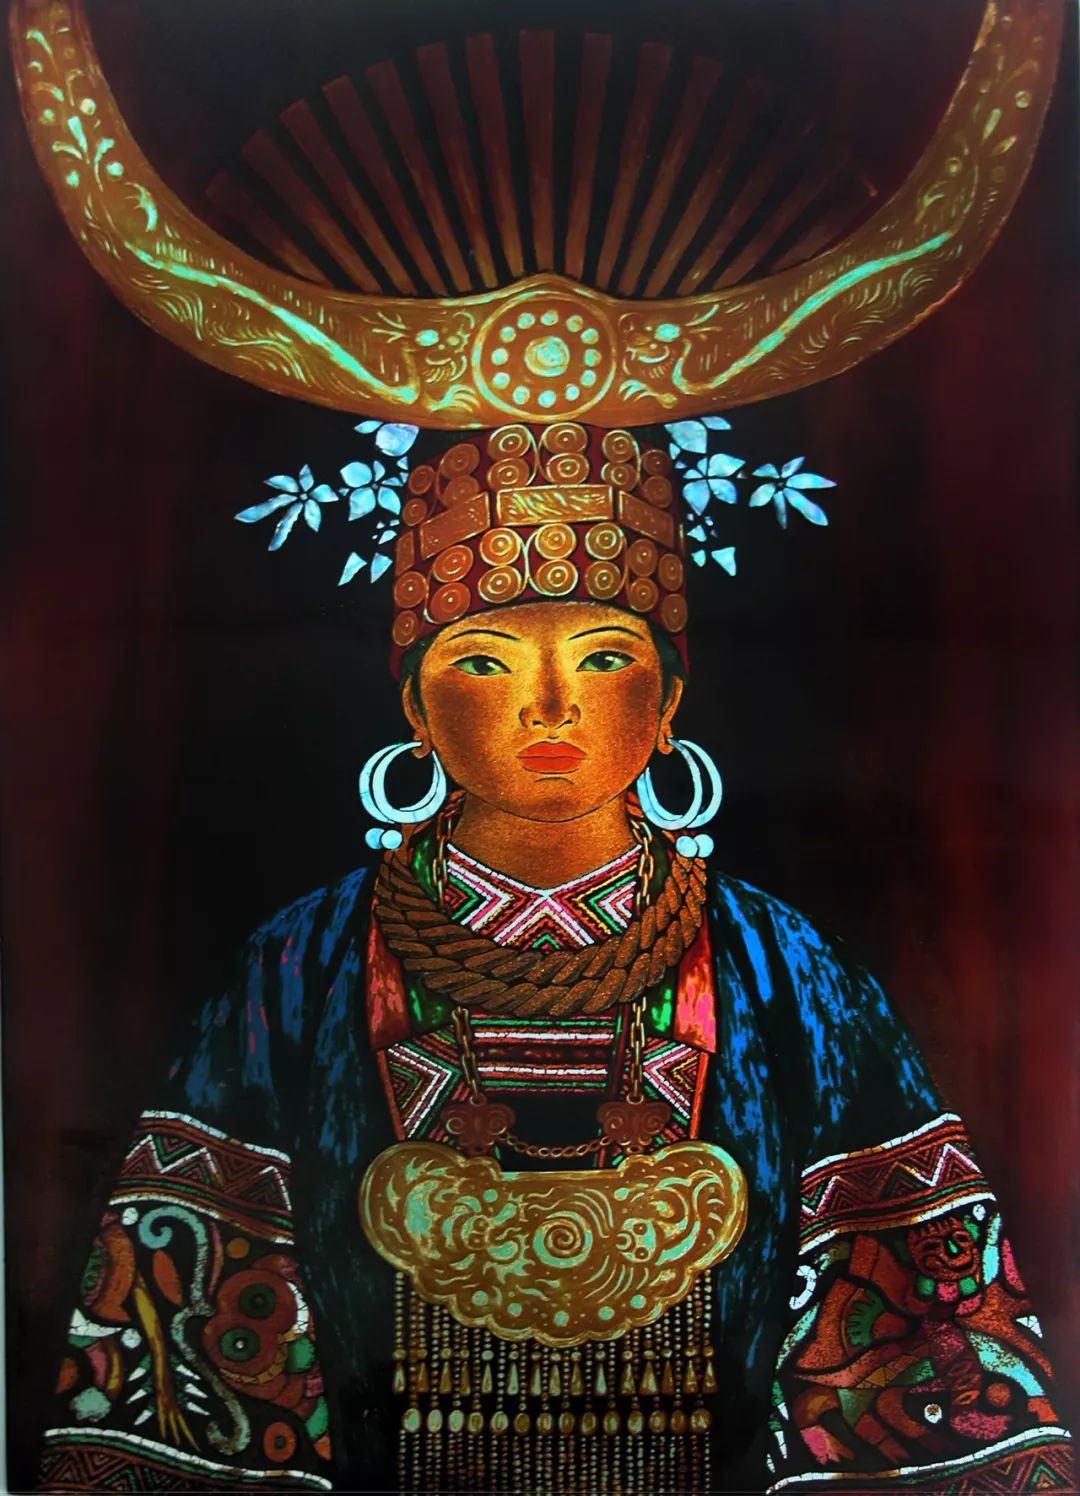 漆的讲究——中国工艺美术大师 王和举